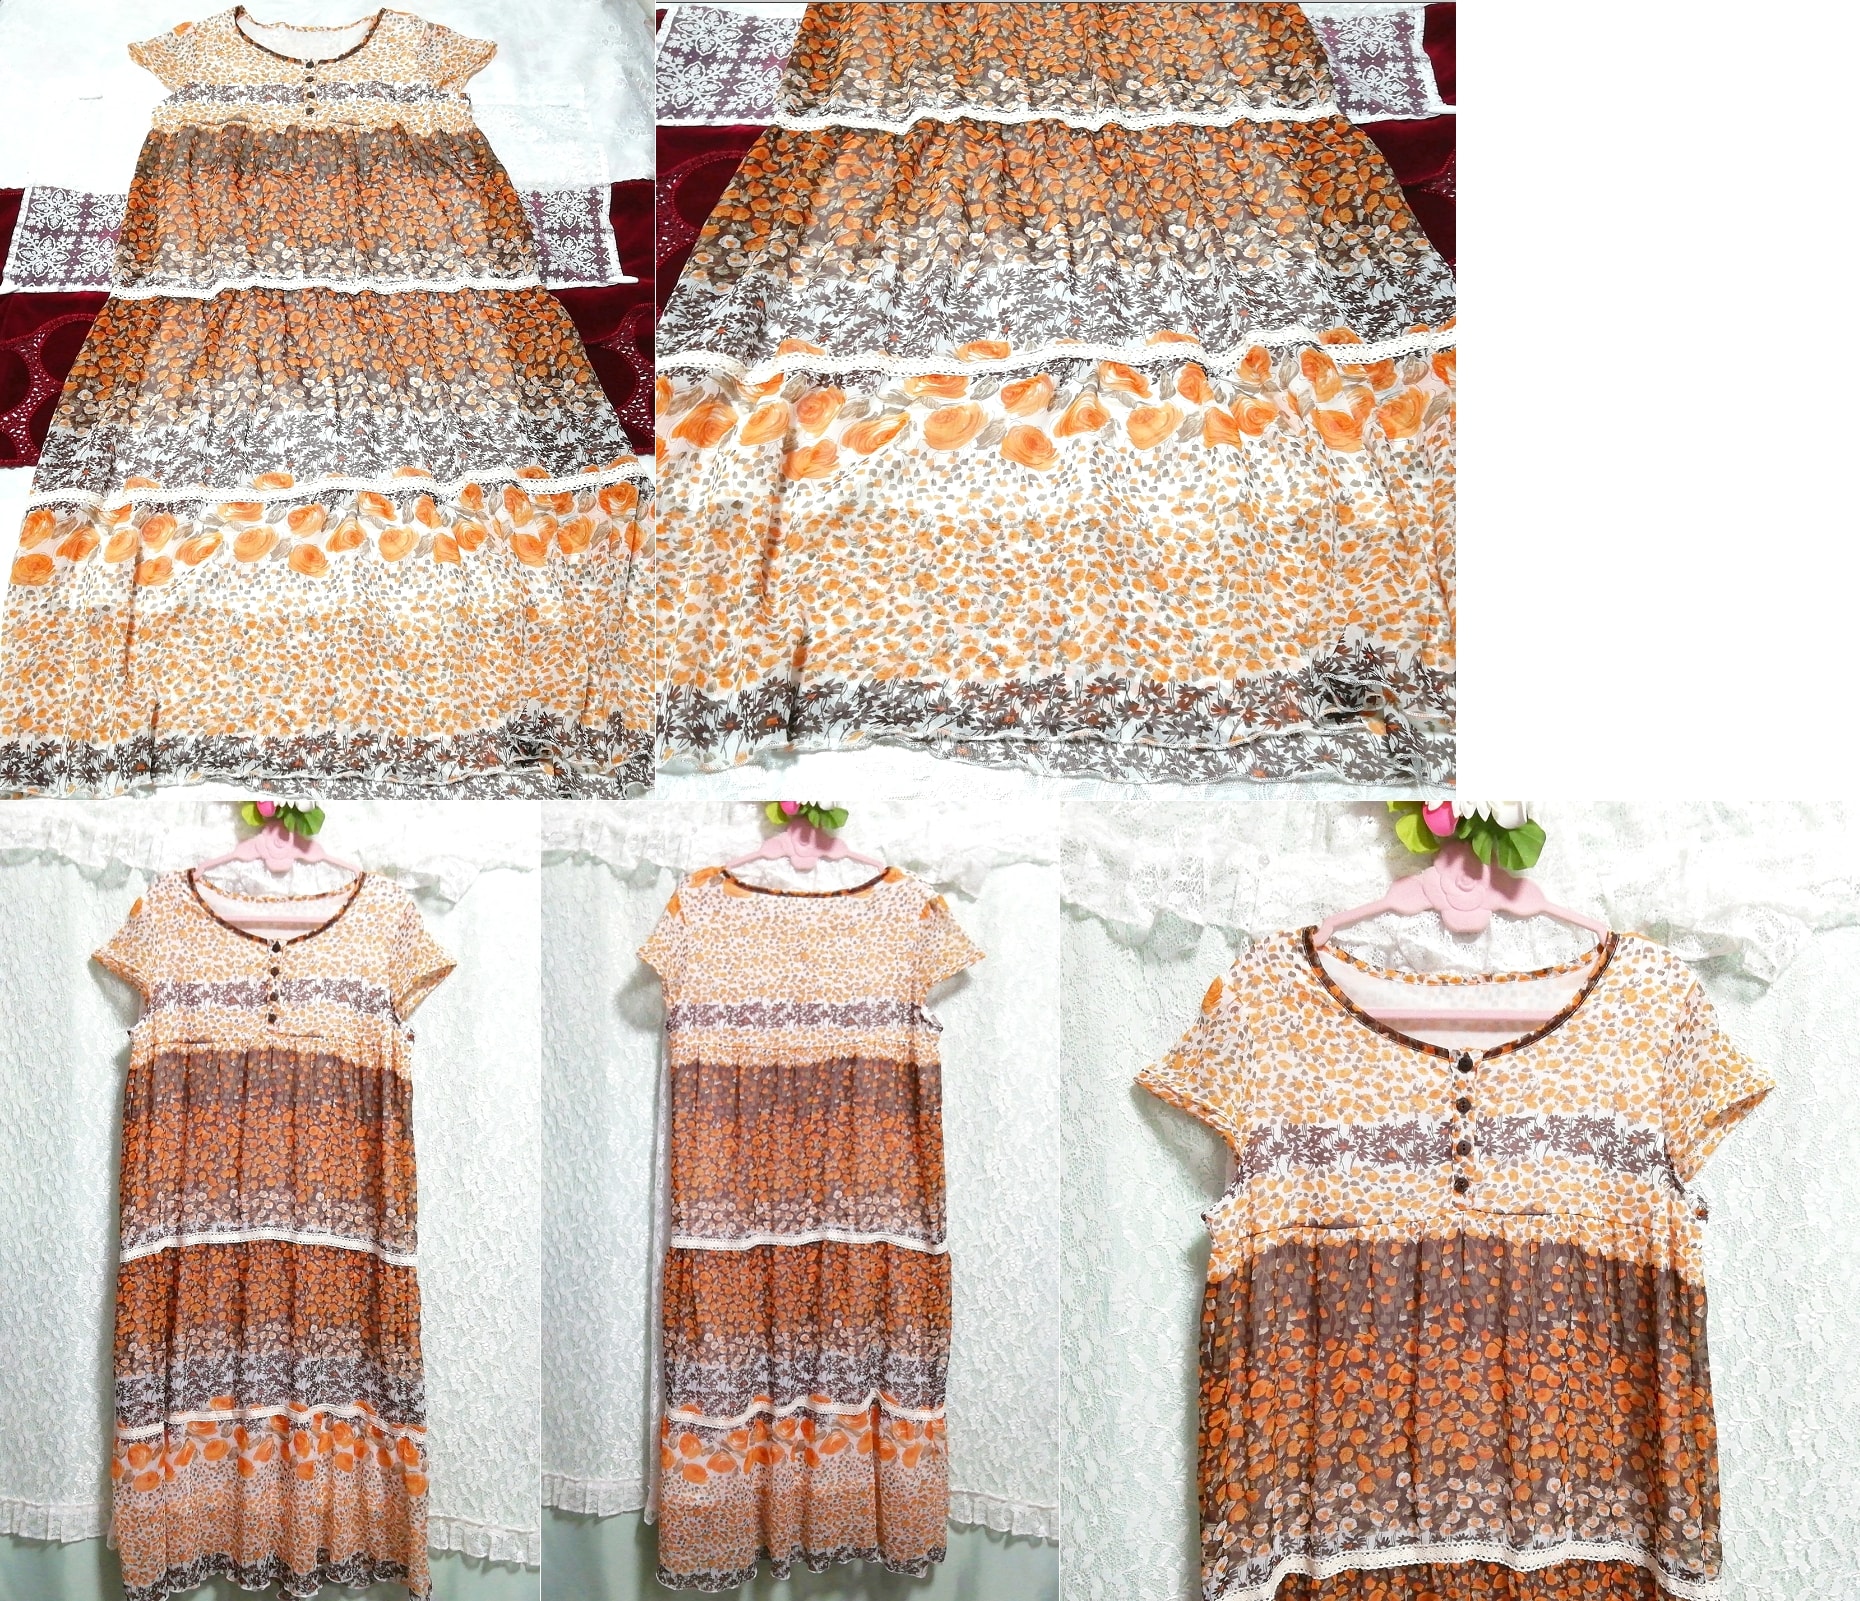 오렌지 브라운 꽃무늬 쉬폰 반소매 롱 튜닉 네글리제 나이트가운 드레스, 튜닉, 짧은 소매, m 사이즈